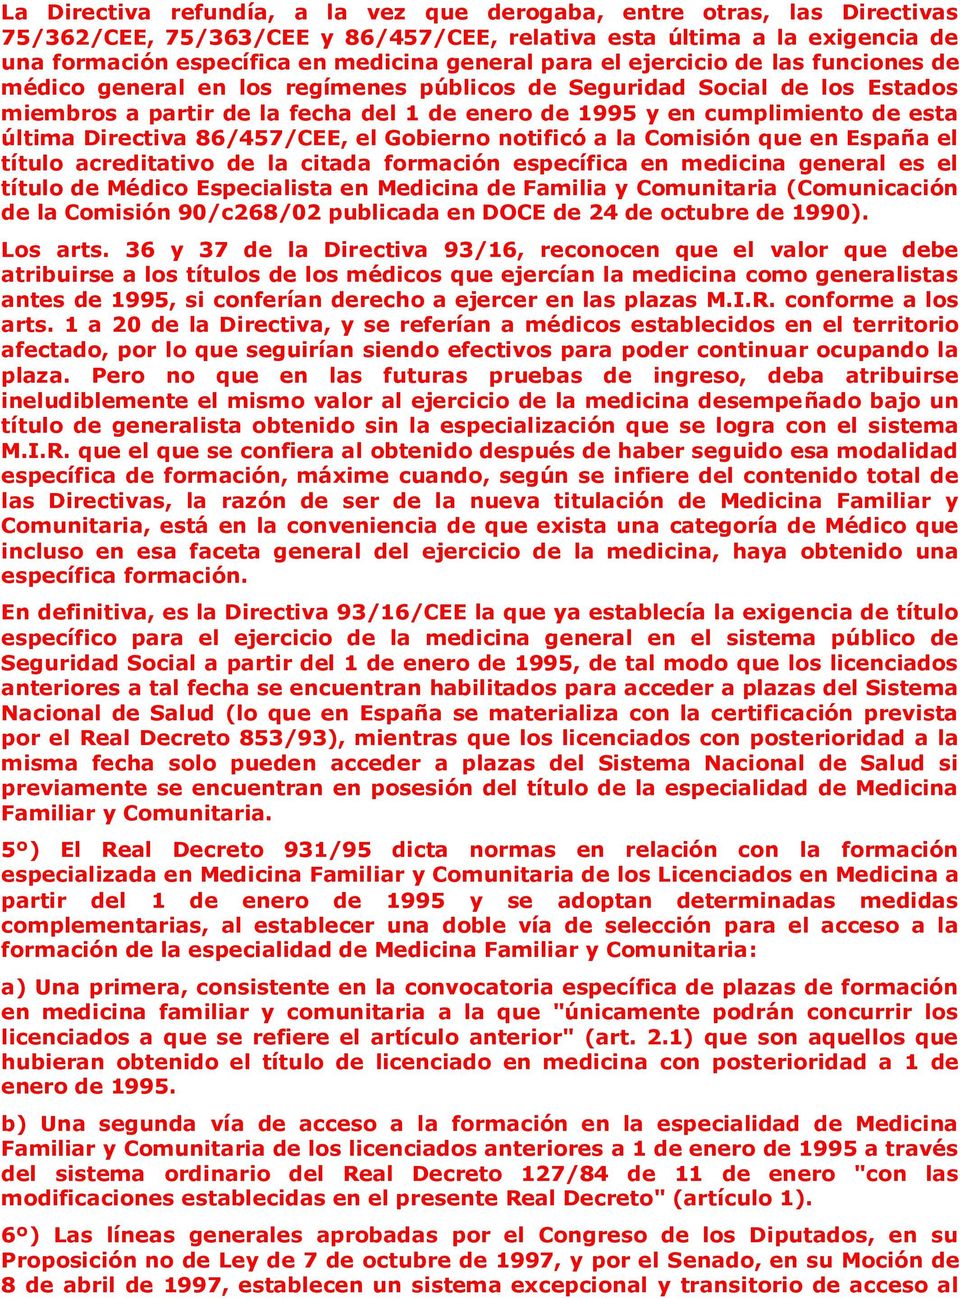 Directiva 86/457/CEE, el Gobierno notificó a la Comisión que en España el título acreditativo de la citada formación específica en medicina general es el título de Médico Especialista en Medicina de